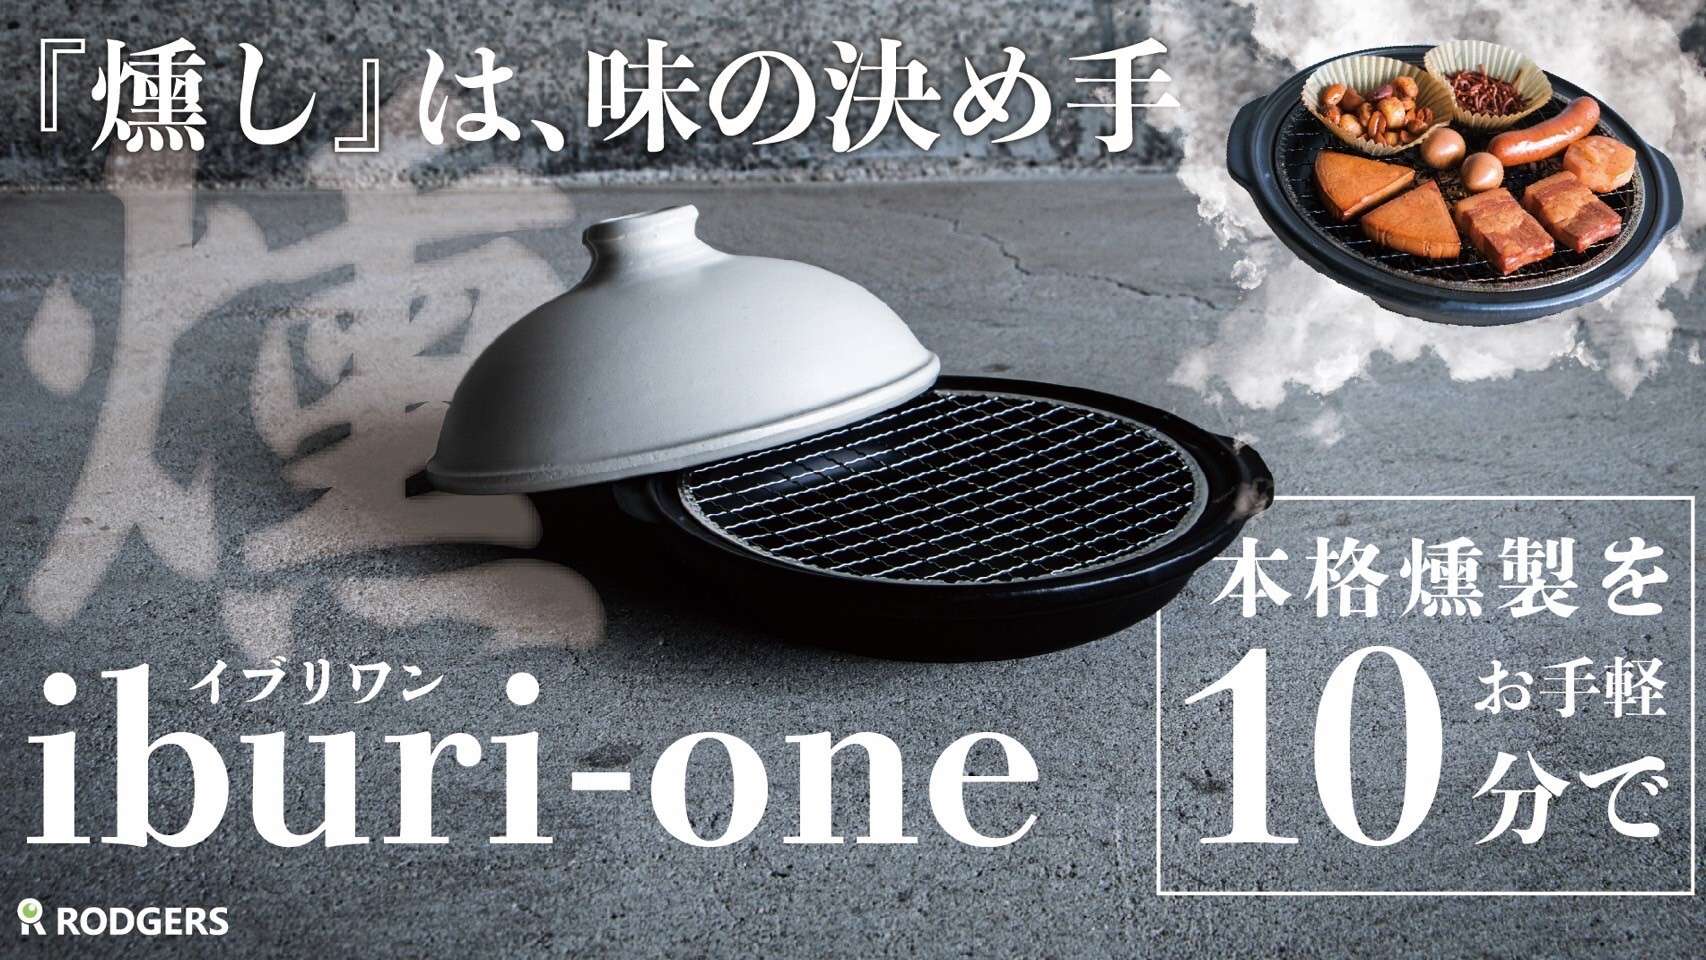 3ステップ、たったの10分で仕上げる燻製鍋
【iburi-one イブリワン】を
8月30日までMakuakeにて限定先行販売中！